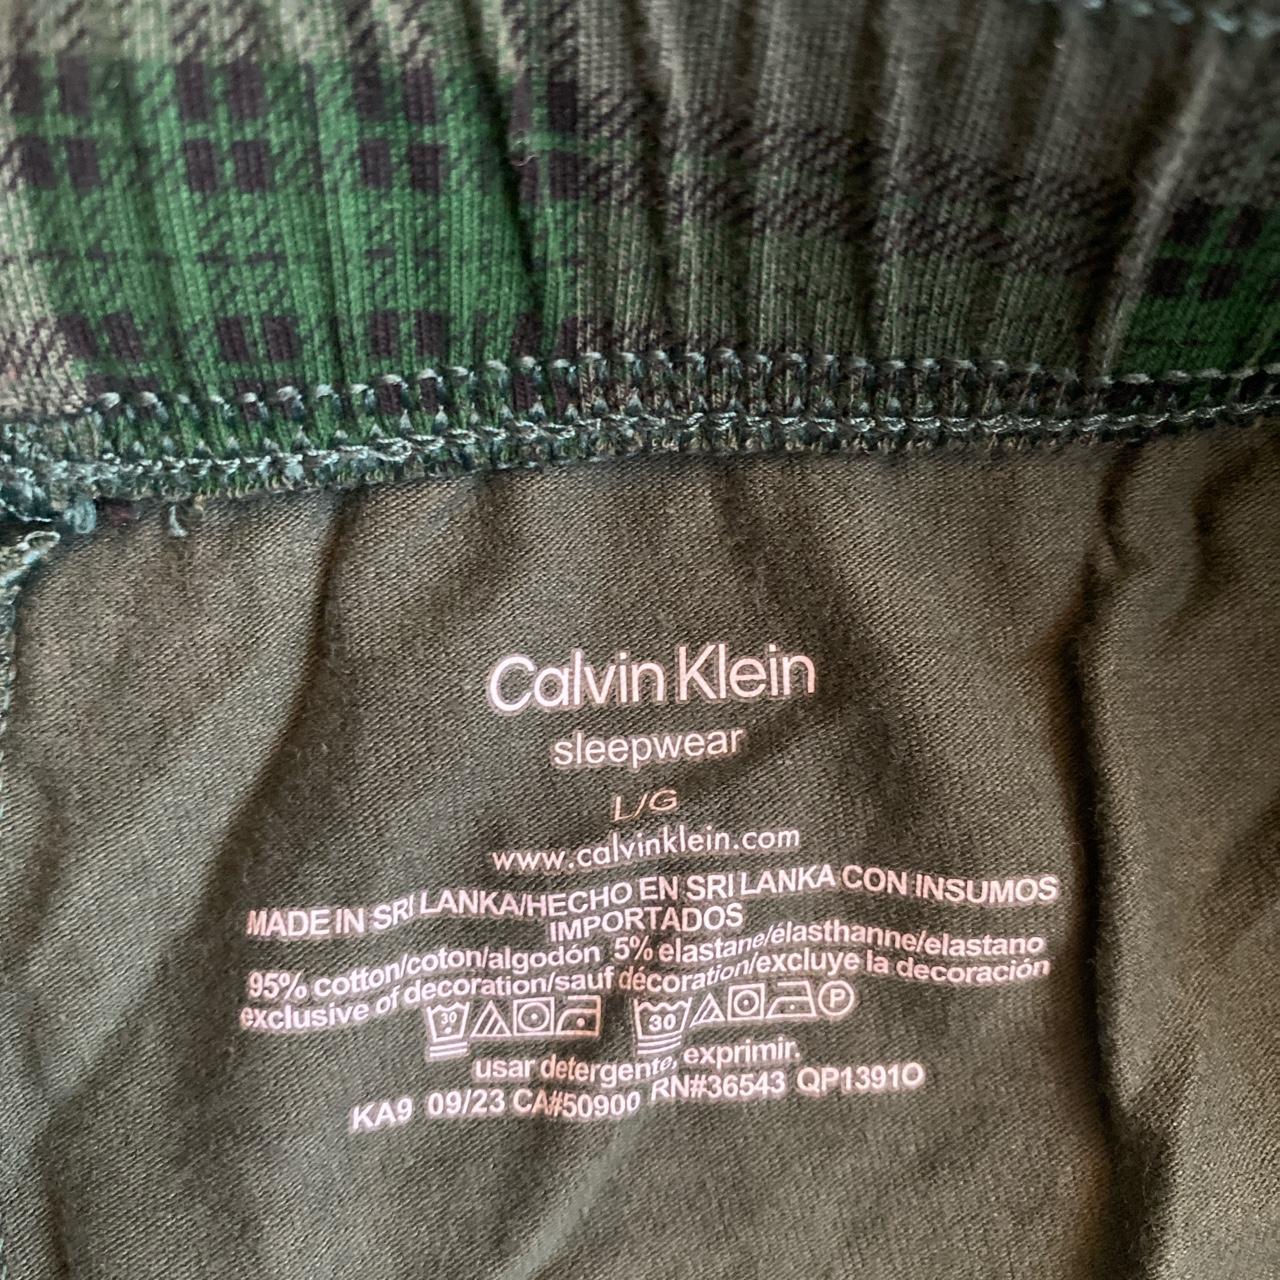 Calvin Klein sleep set size Large #matchingset - Depop